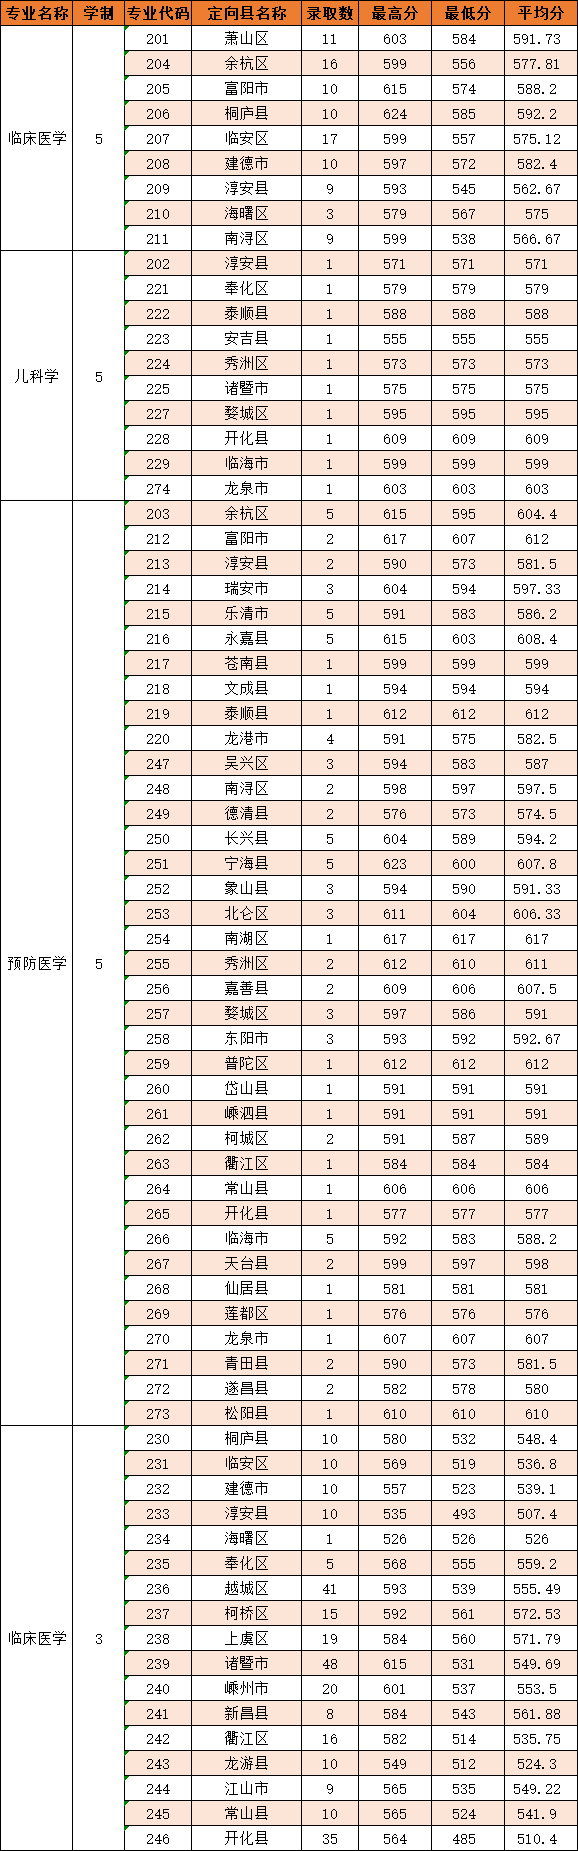 2022年杭州医学院专业最低分和最低录取位次排名多少,附历年最低分数据